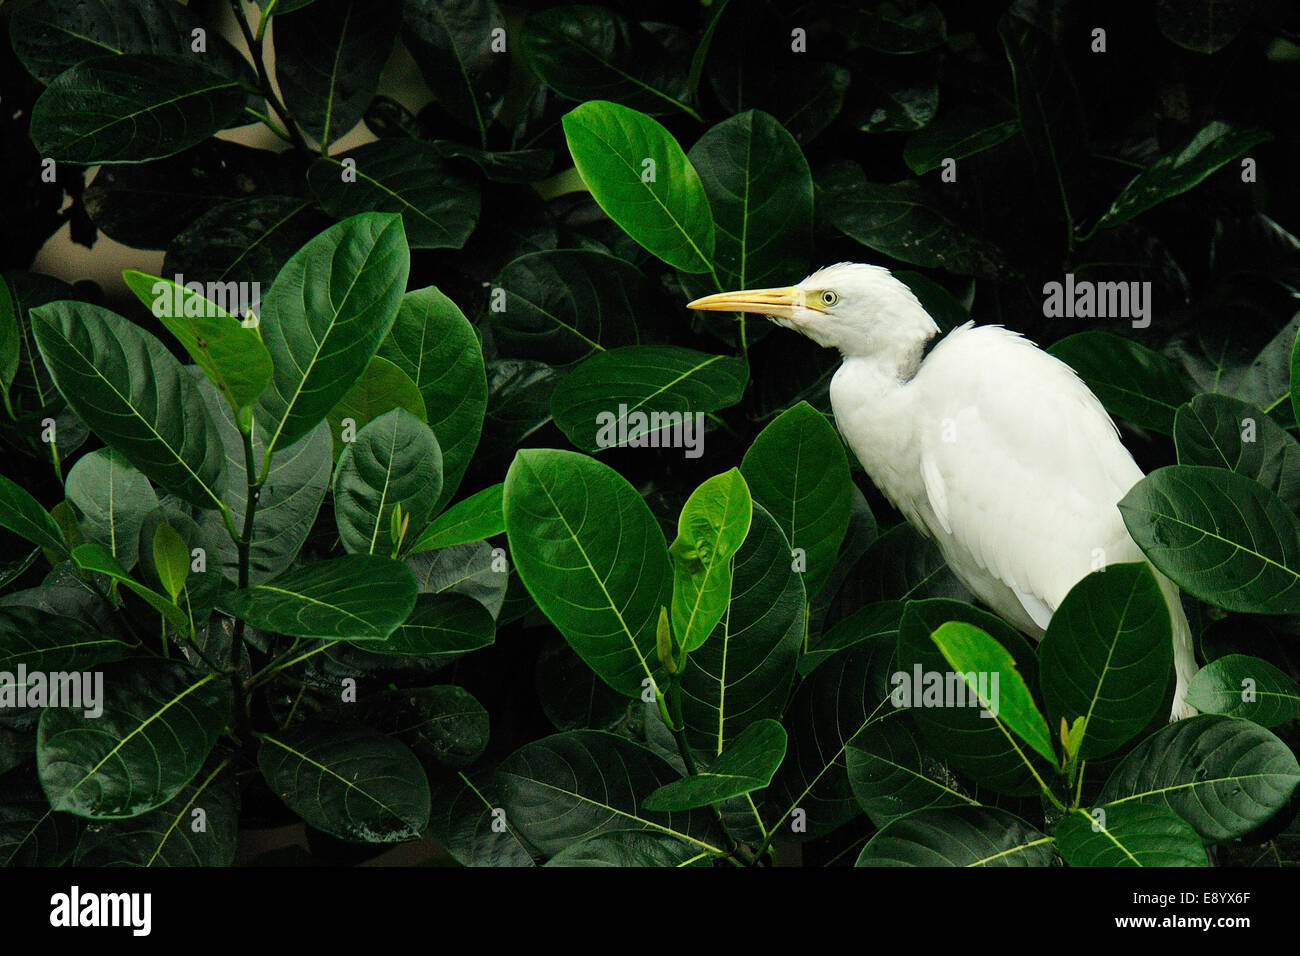 Little egret, Egretta garzetta, Ardeidae, Petulu, Bali, Indonesia, Asia Stock Photo